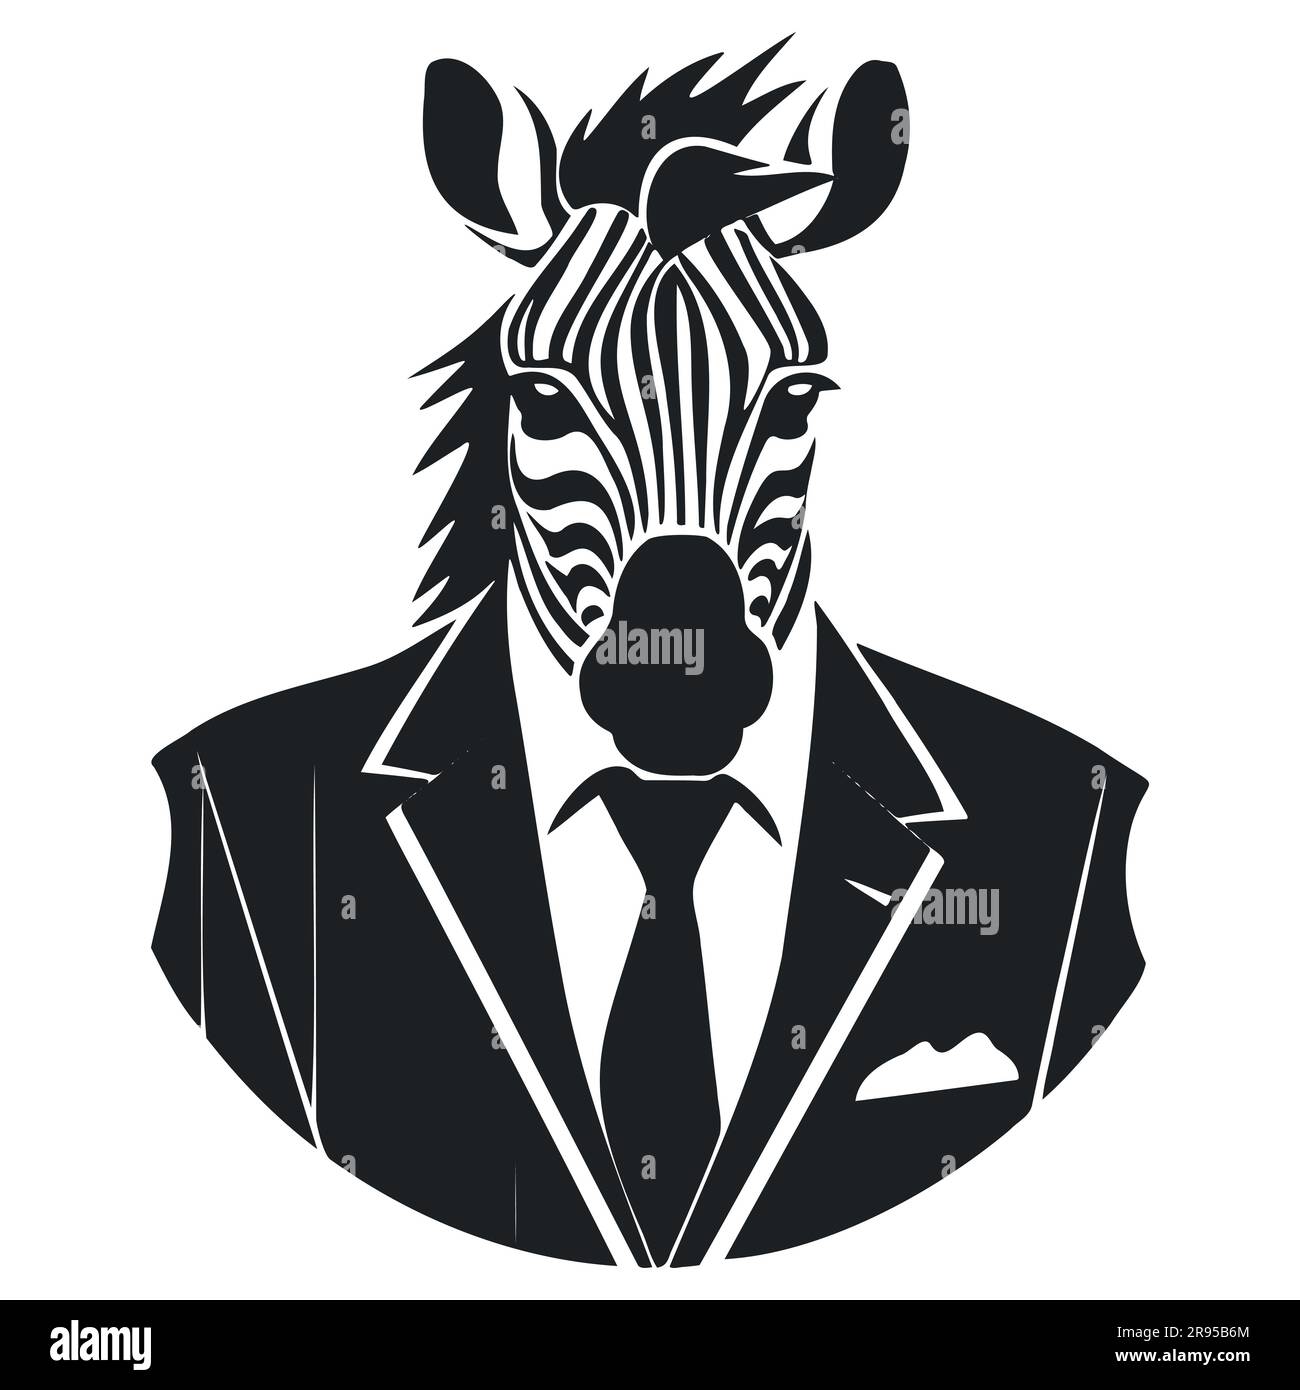 Zebra in Business-Anzug und Krawatte. Schwarz-weiße Silhouette Stock Vektor